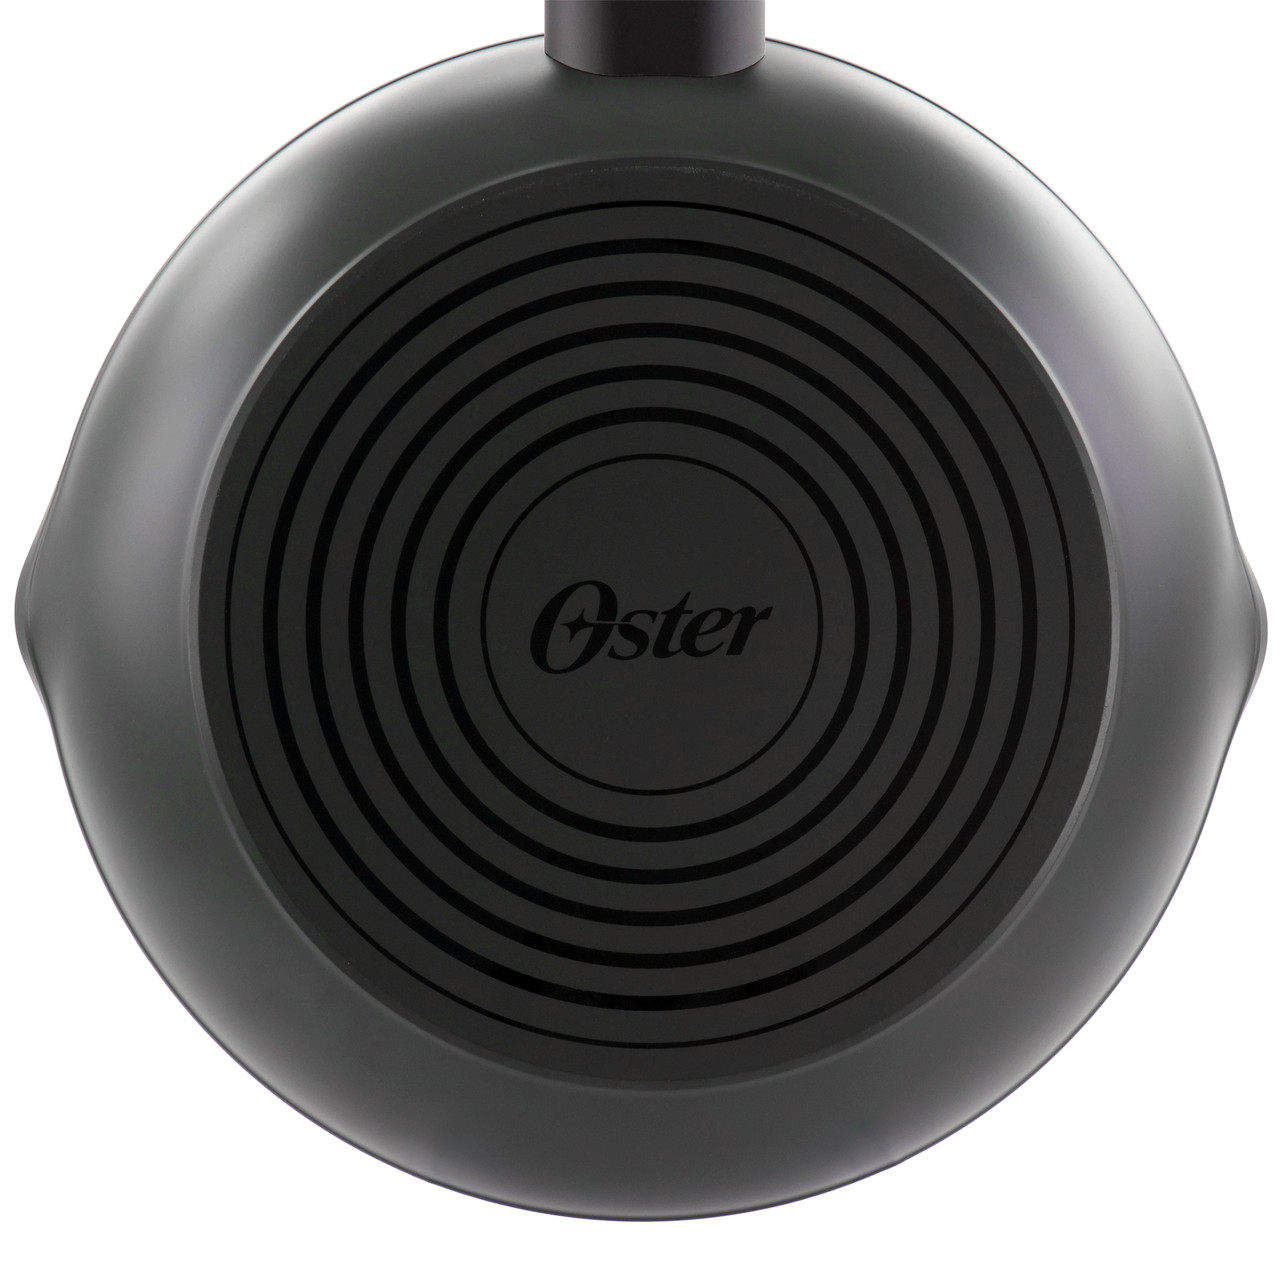 Oster Kono 8 Inch Aluminum Nonstick Frying Pan in Black with Bakelite  Handles